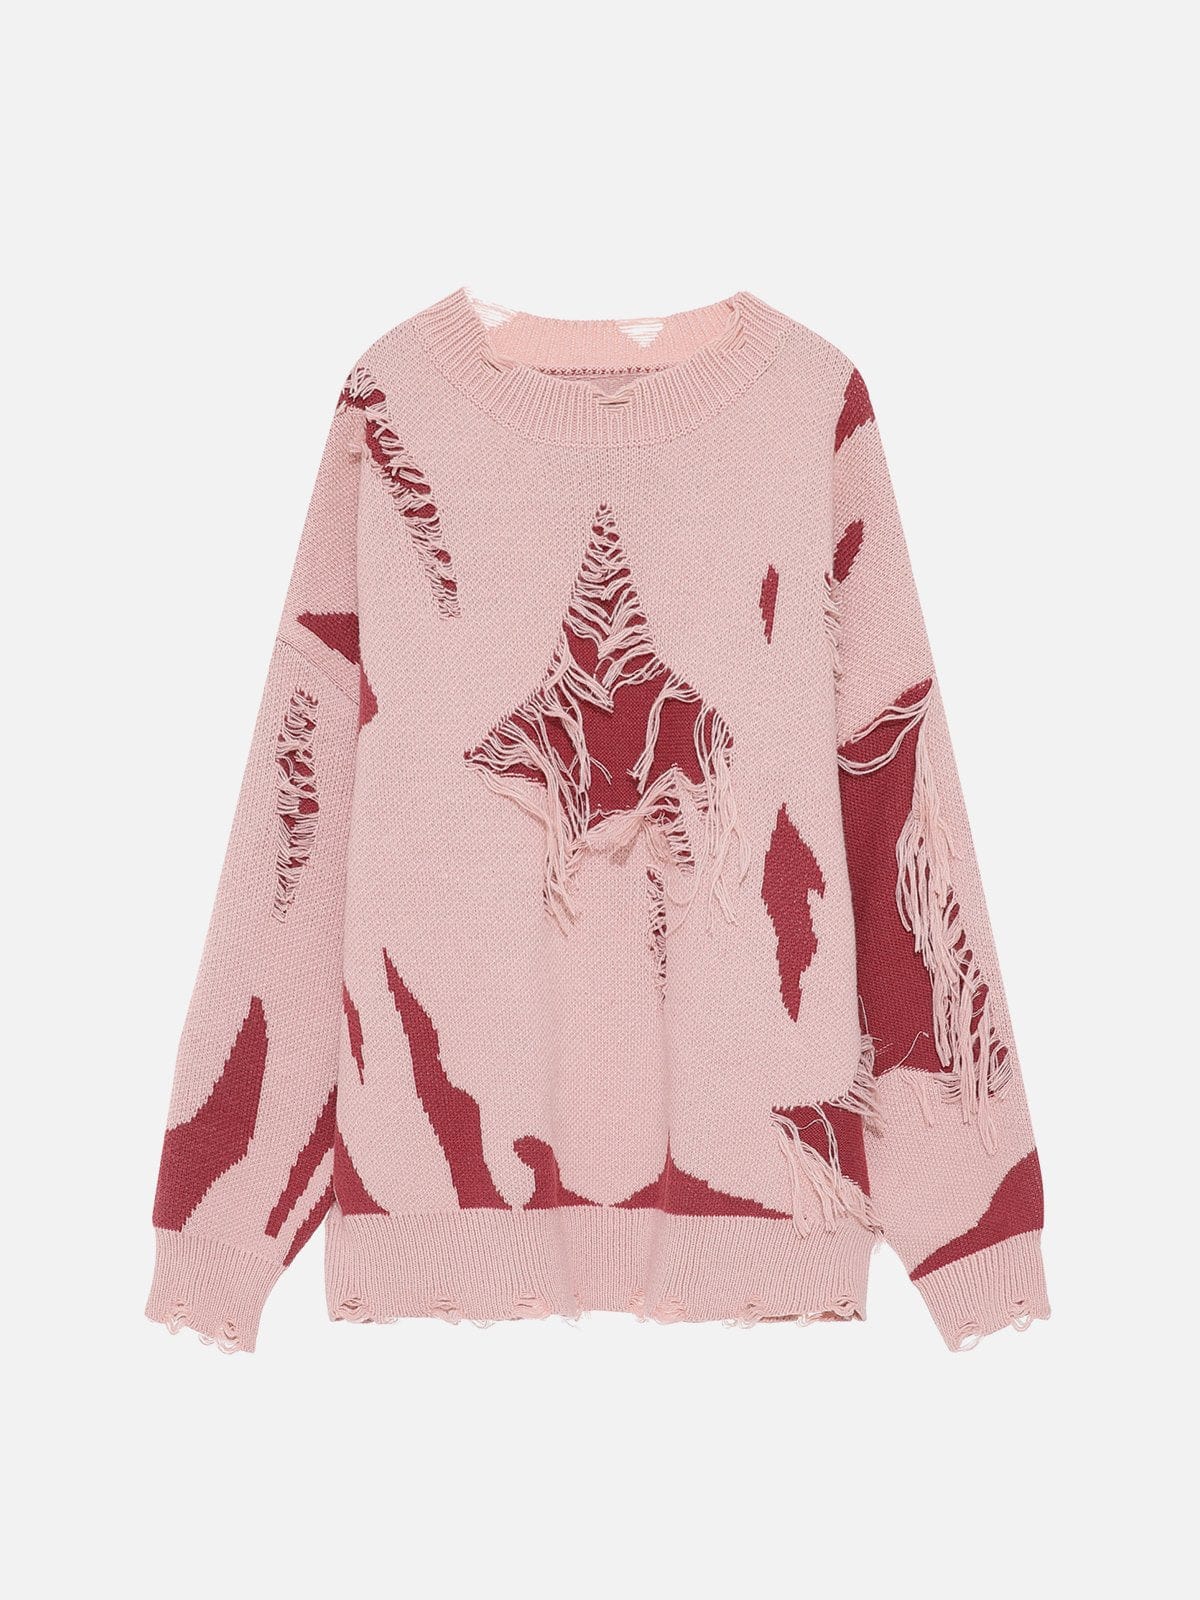 NEV Distressed Star Pattern Tassel Sweater